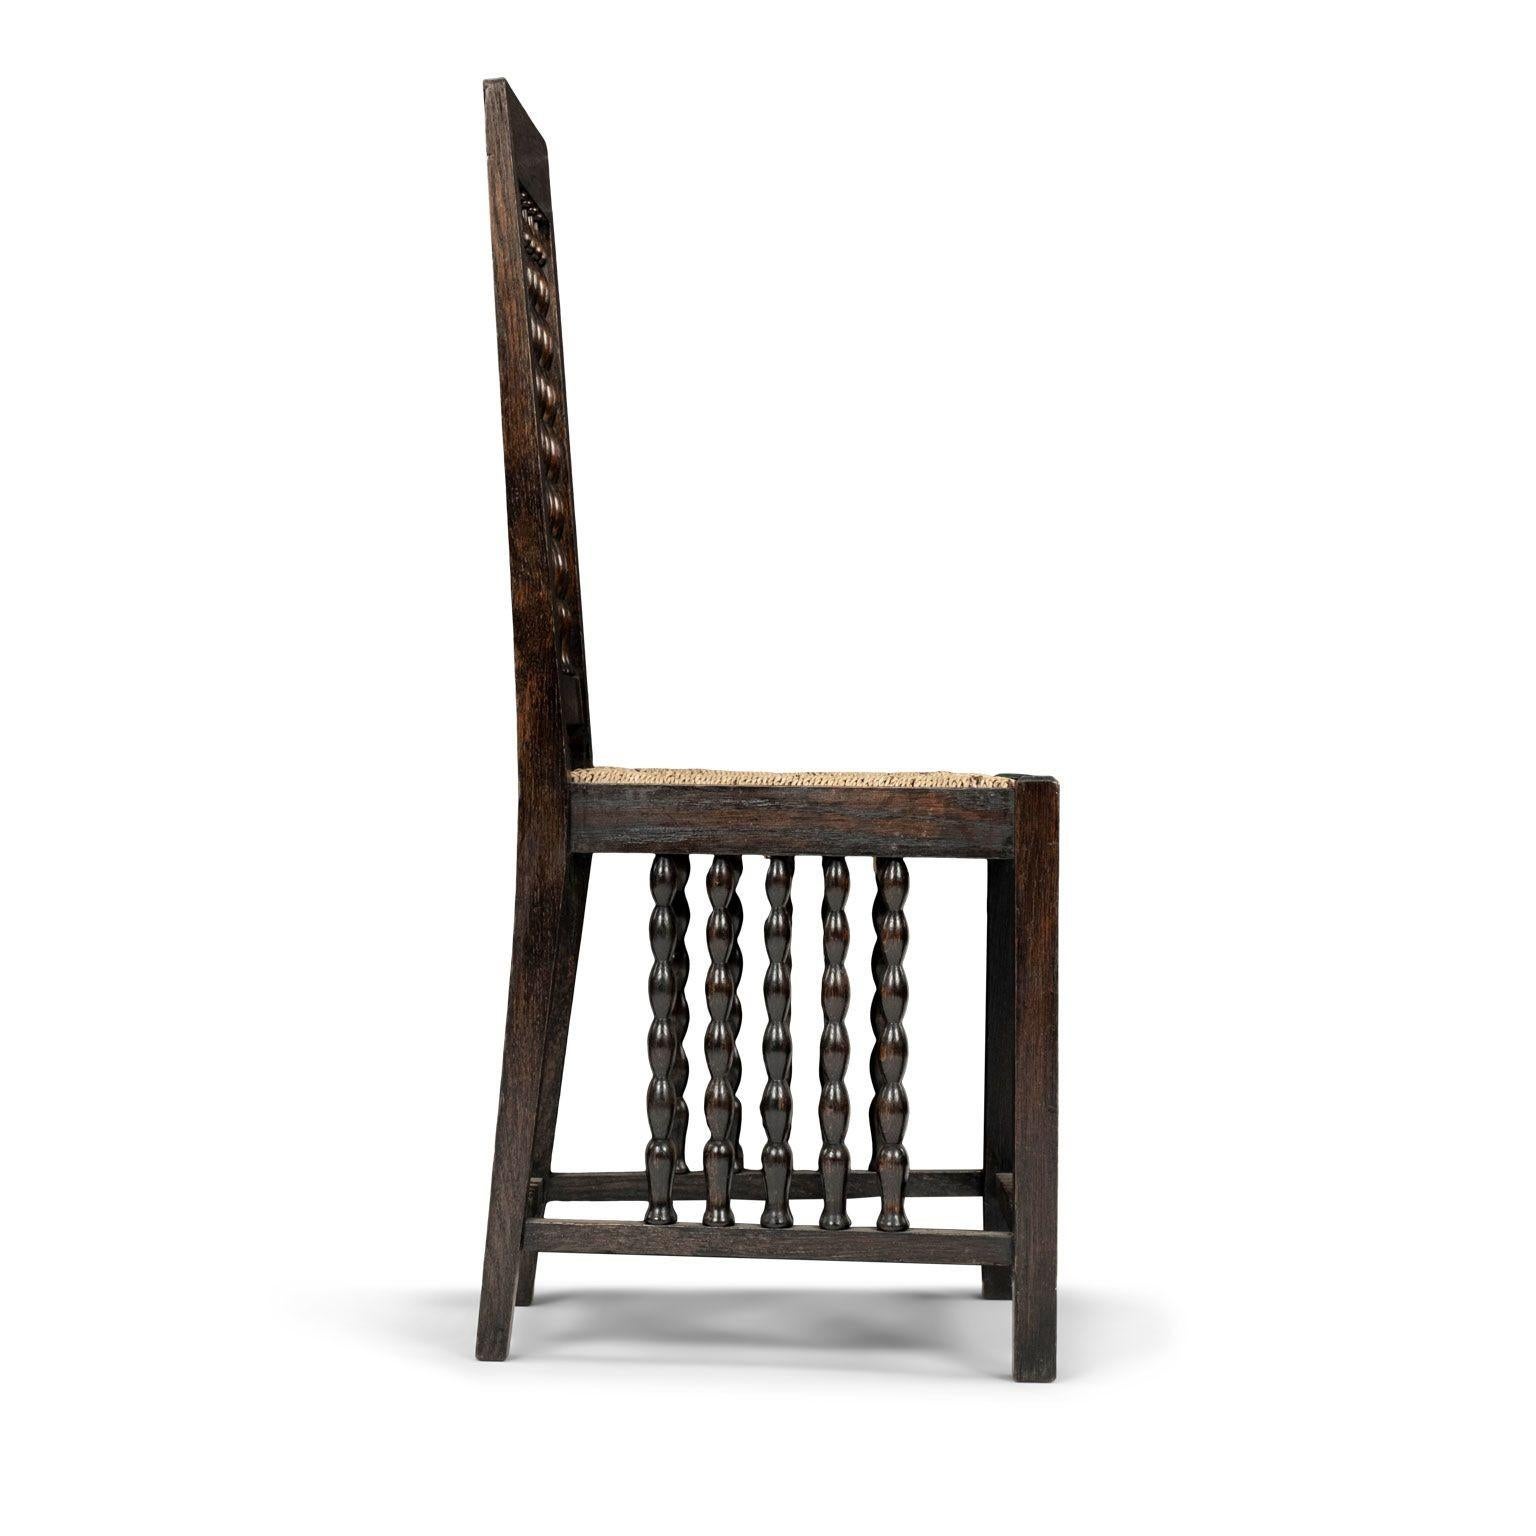 Chaise d'appoint Jugendstil du début de la modernité par Heinrich Vogeler, vers 1910, Allemagne. Structure sculptée dans du chêne noirci, pieds carrés (les pieds carrés du dossier se rétrécissent), assise trapézoïdale écrasée, motif perlé ajouré